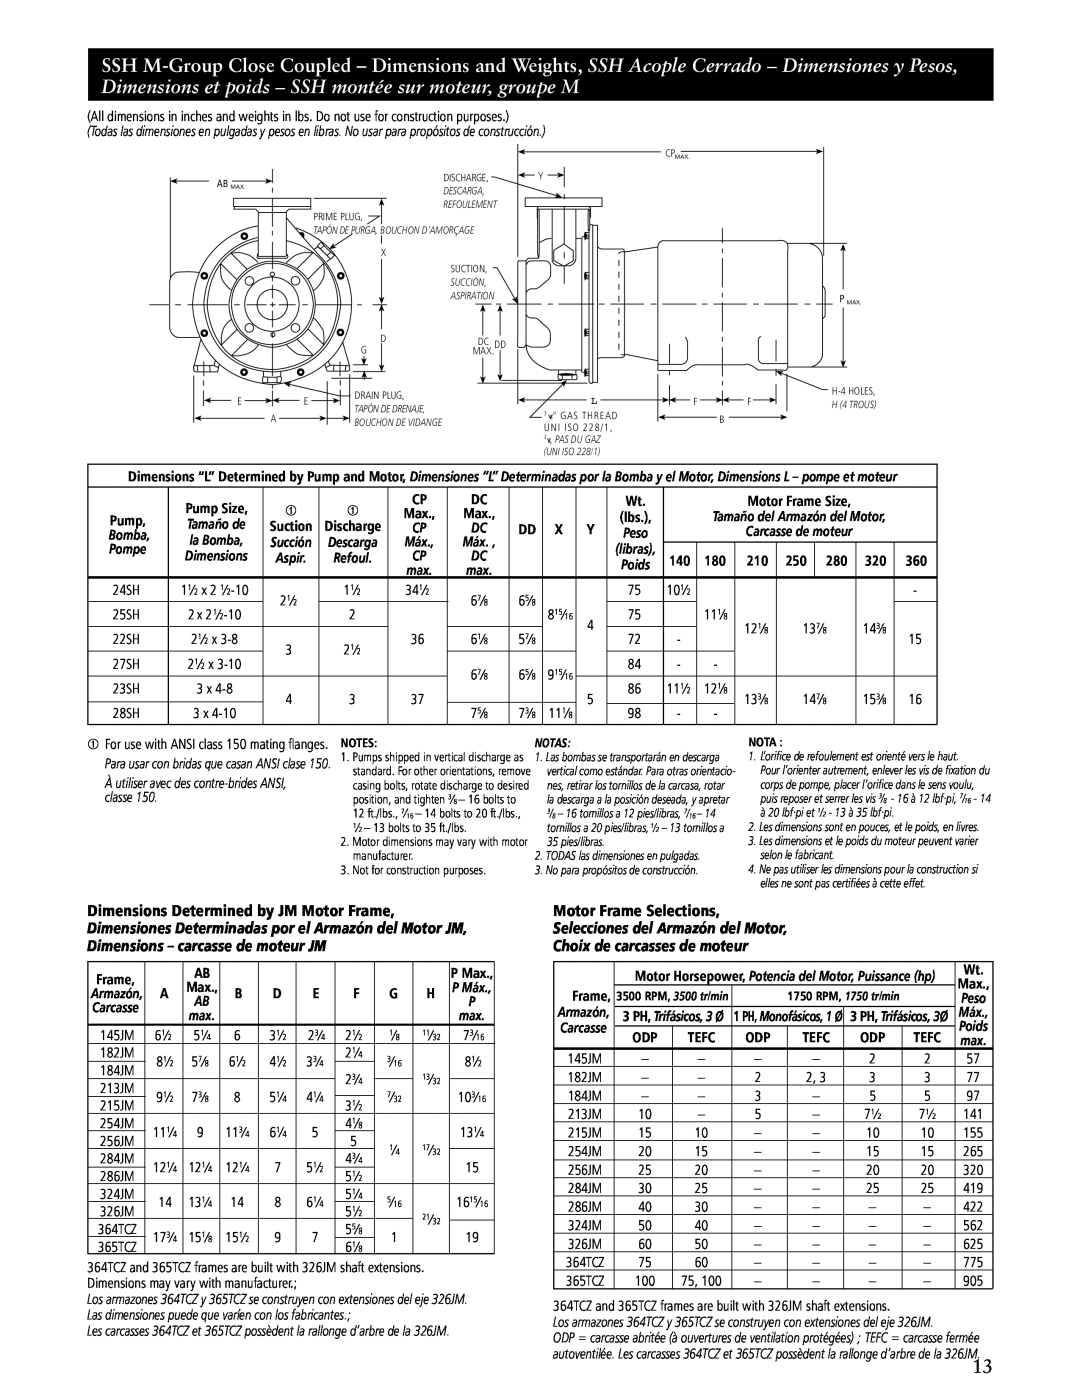 ITT SSH-C, SSH-F manual Motor Frame Selections, Selecciones del Armazón del Motor Choix de carcasses de moteur, Tefc 